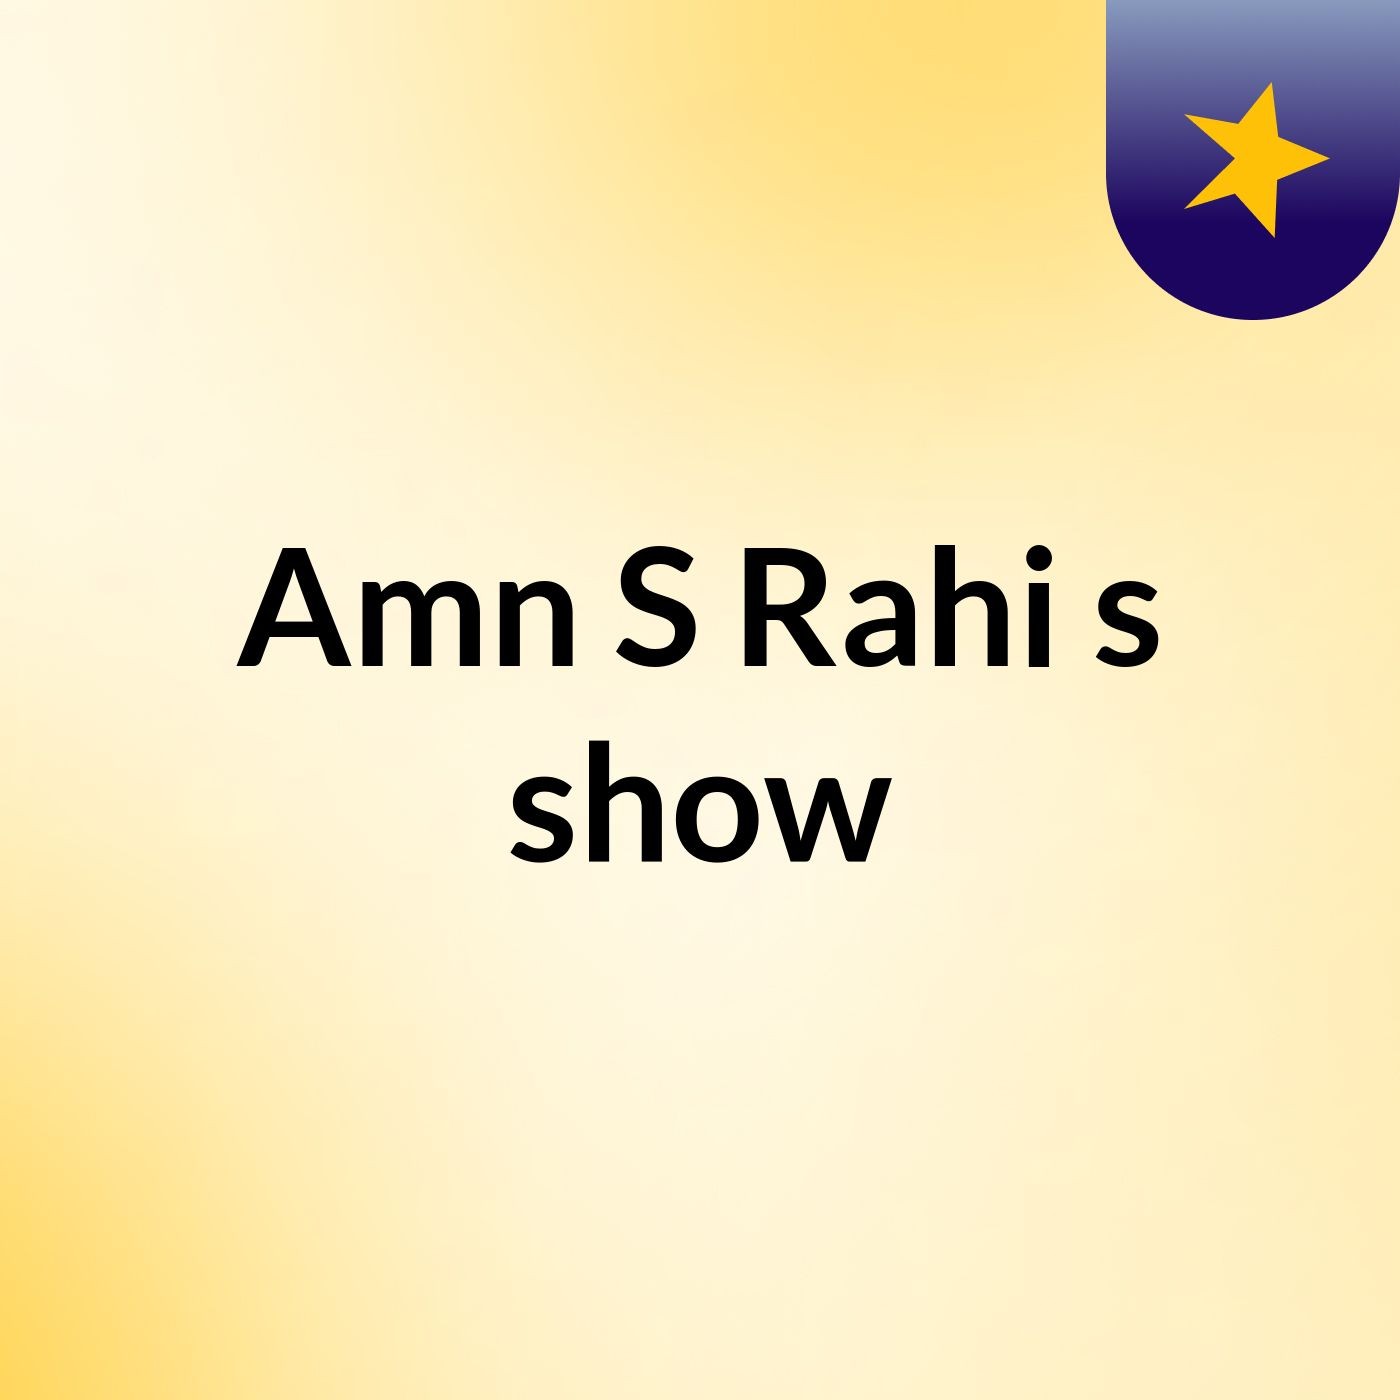 Amn S Rahi's show